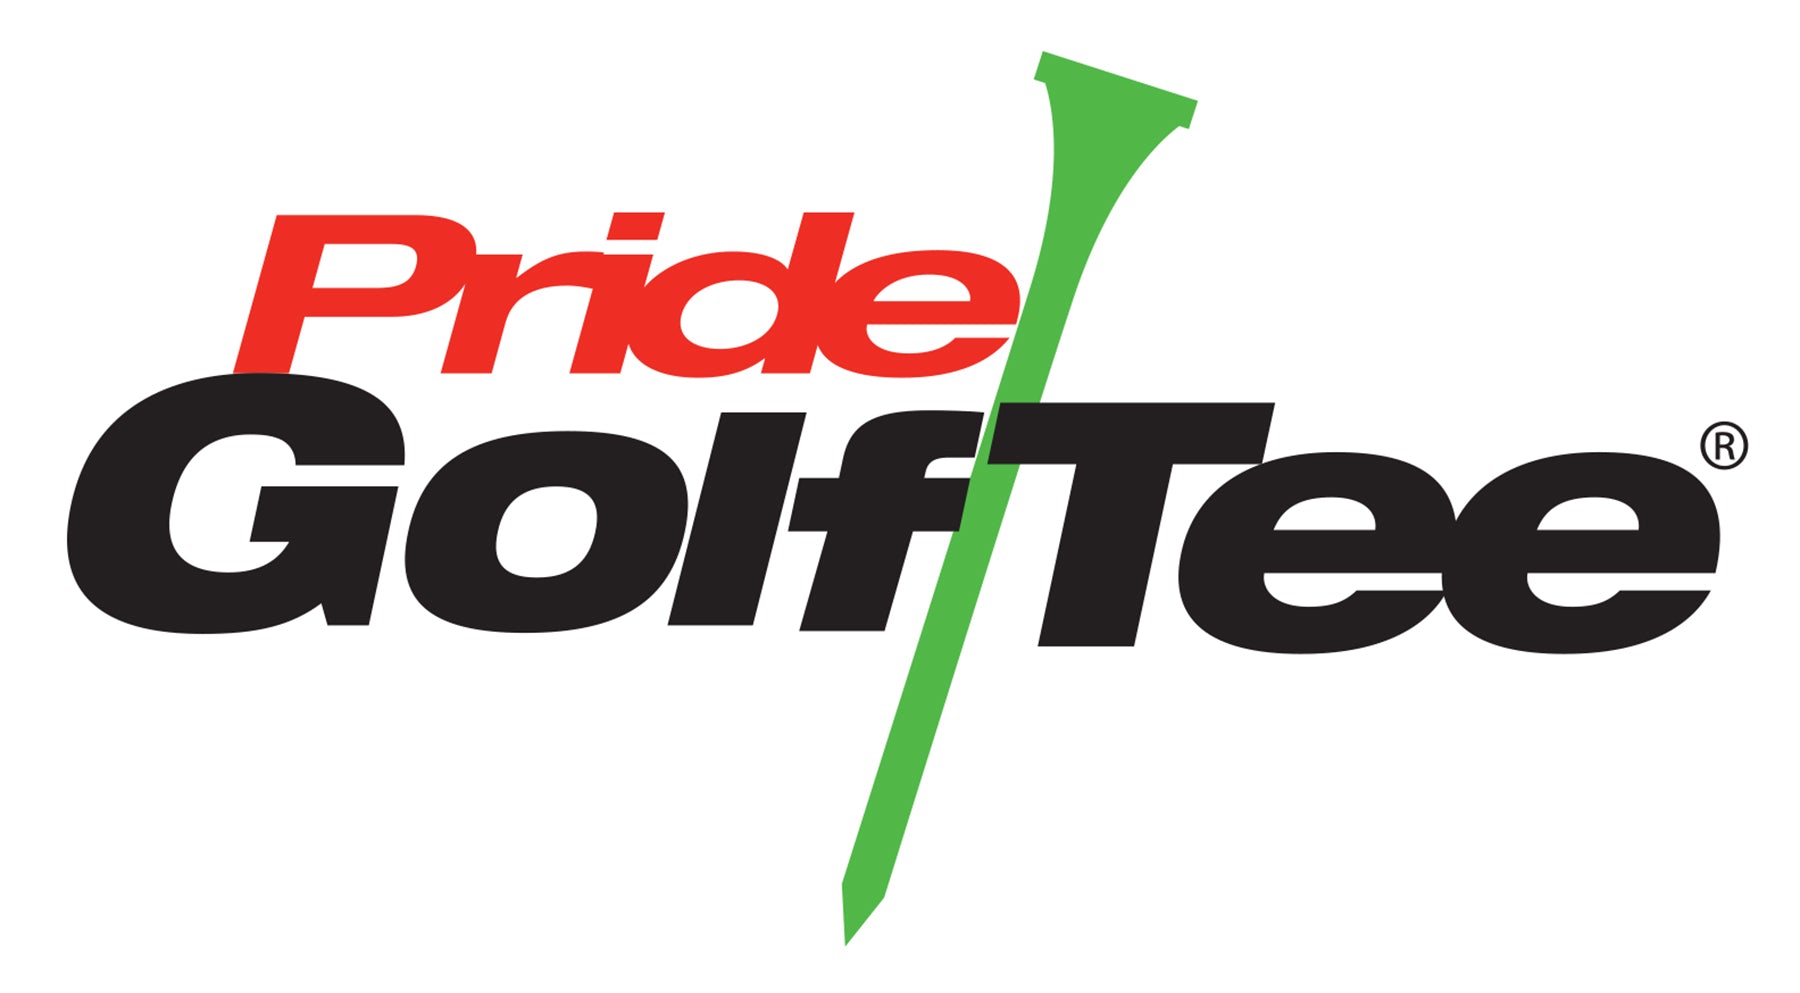 Pride Golf Tee 